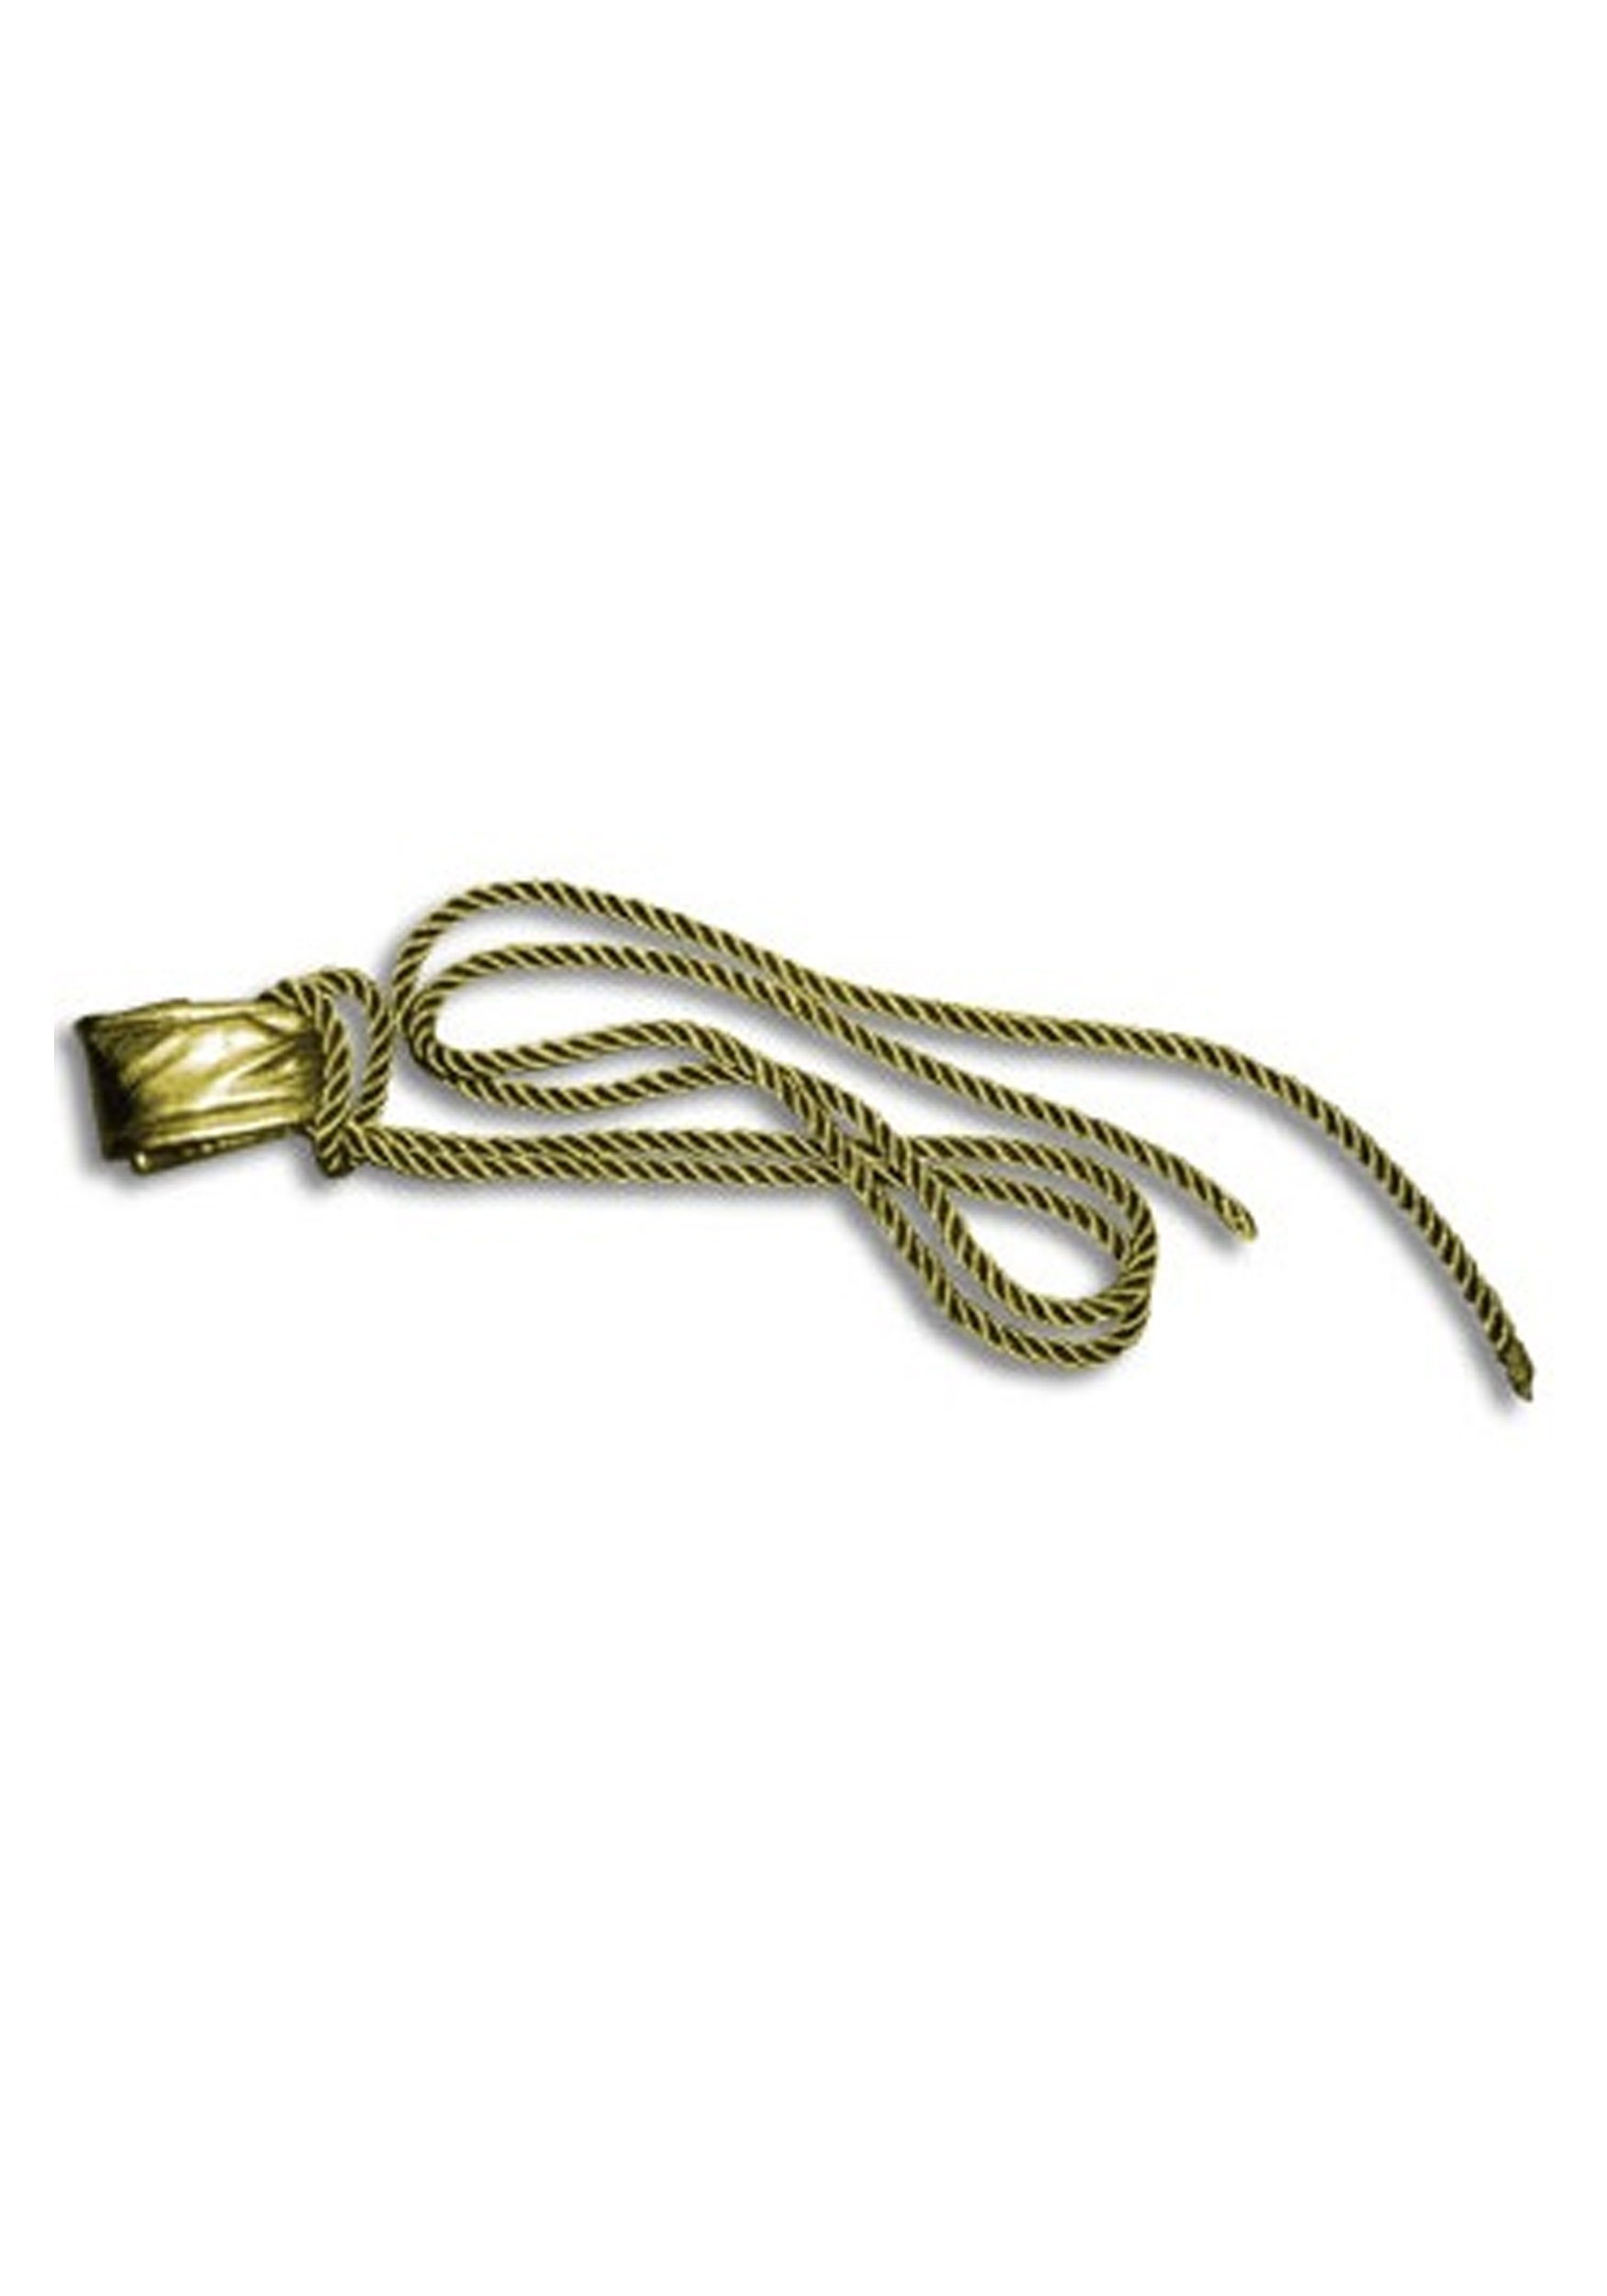 Golden Rope Prop